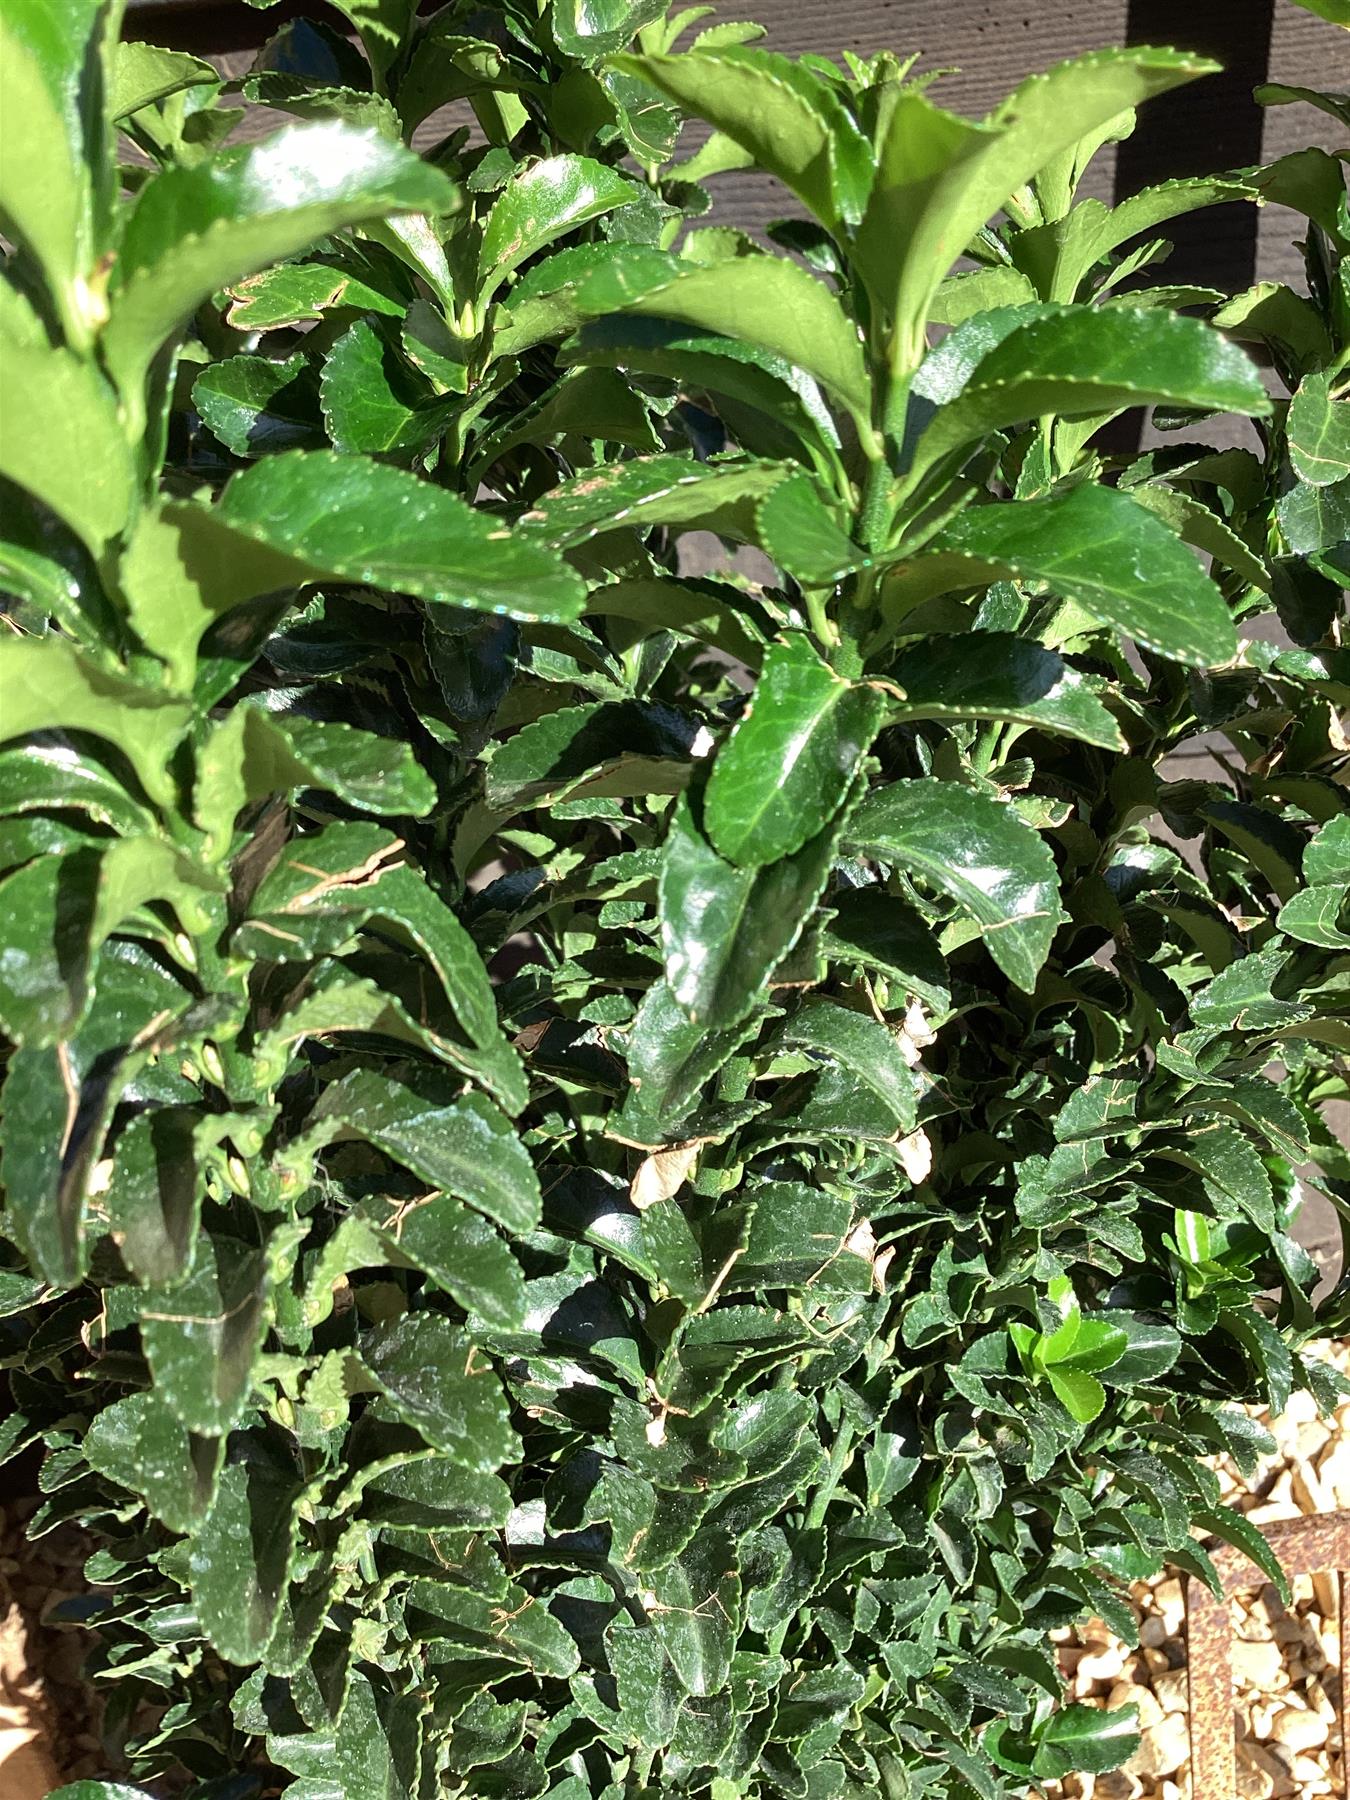 Euonymus japonicus 'Green Spire' - 10lt